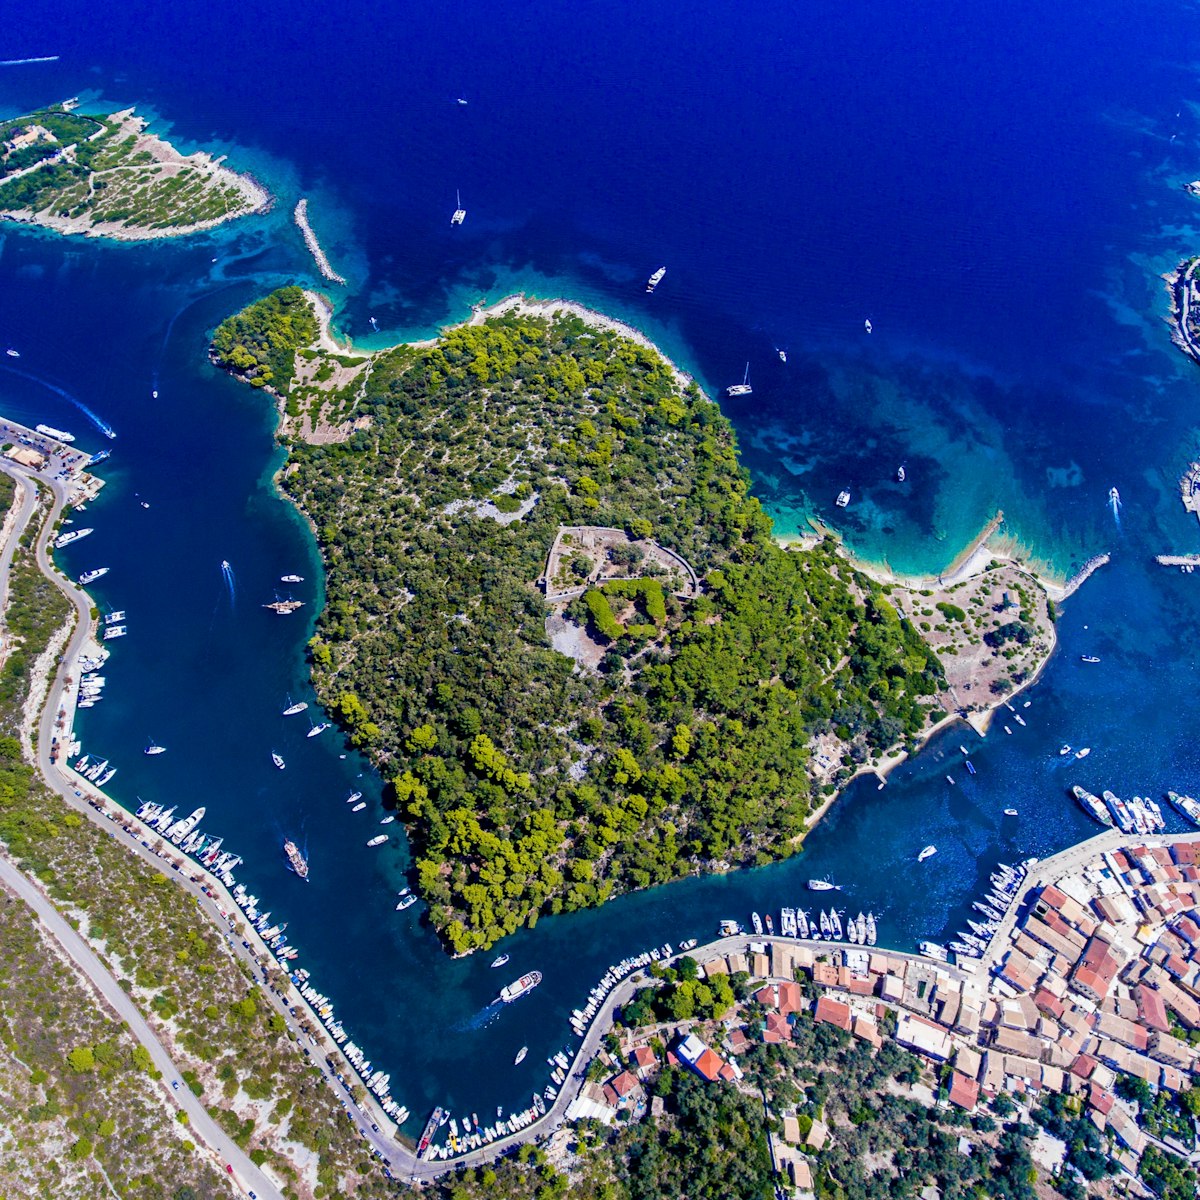 Ga naar de verborgen juweeltjes van de Ionische Zee vanuit de best beoordeelde jachthavens van onze klanten